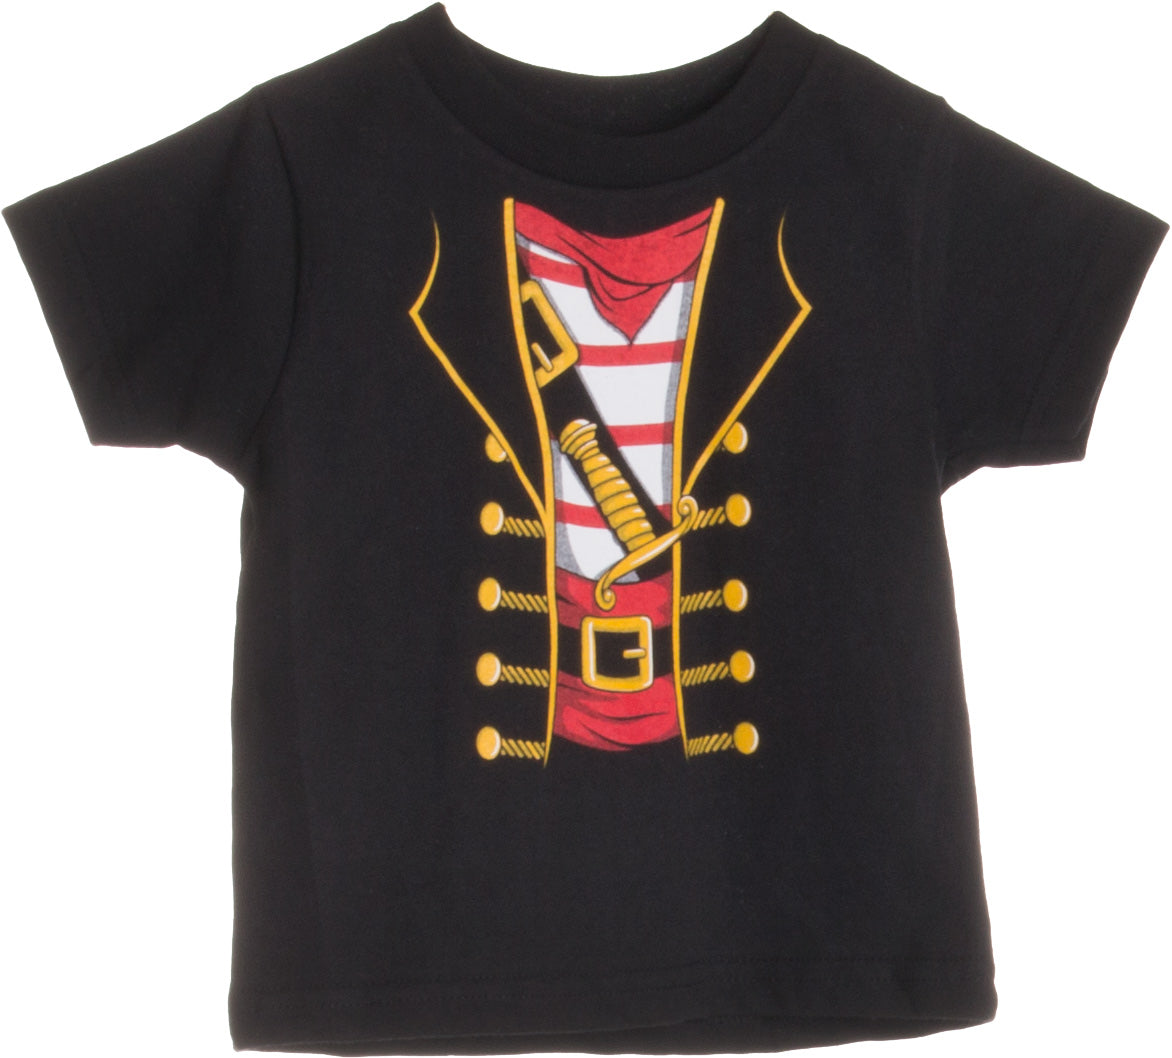 Tstars Halloween Pirate Buccaneer Shirt for Boys Girls Toddler Infant Kids Tshirt 2T Black, Infant Boy's